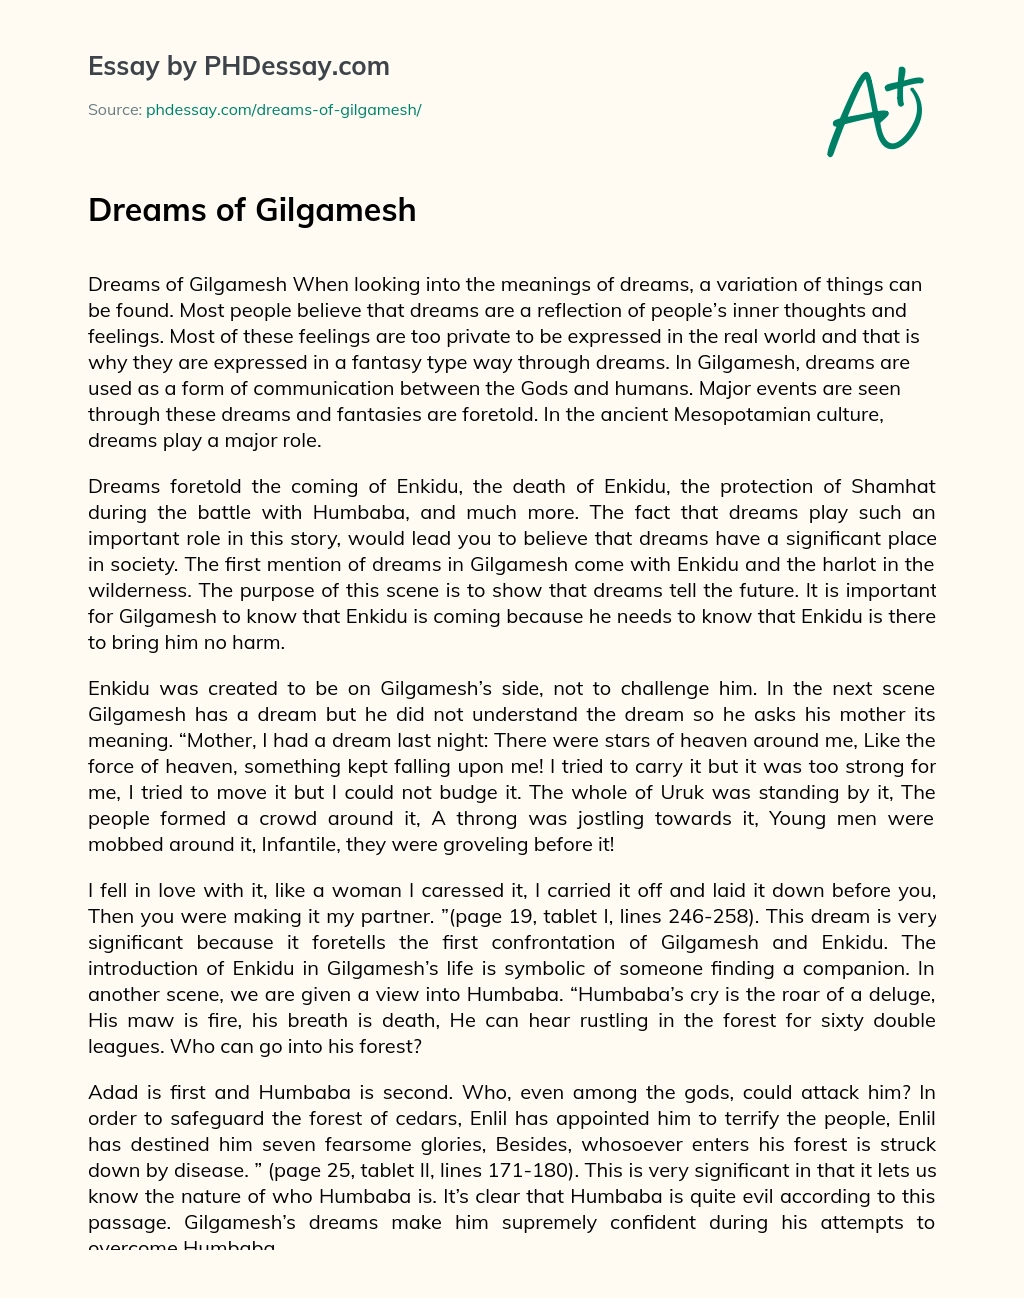 Dreams of Gilgamesh essay